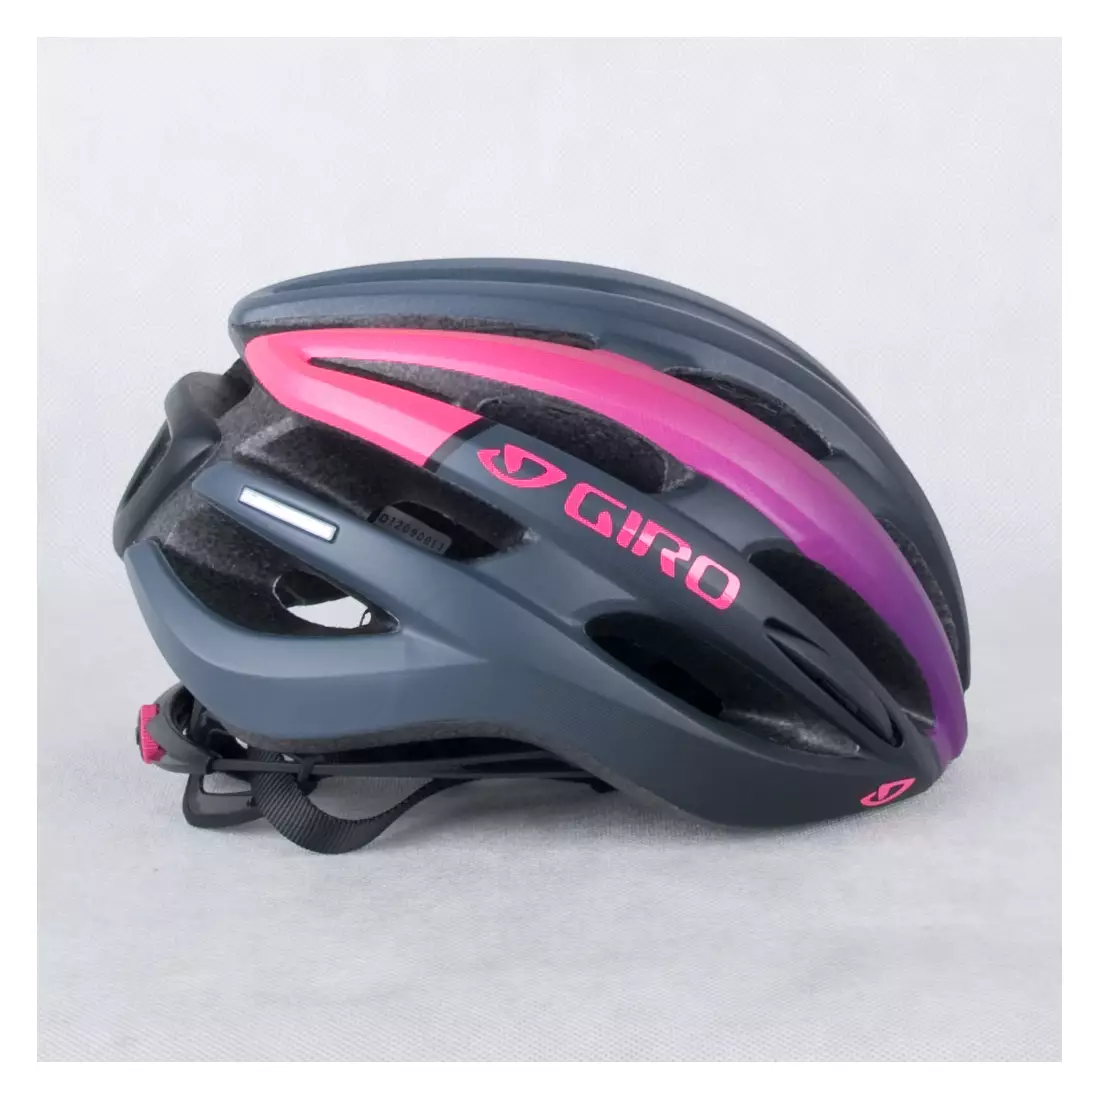 GIRO SAGA - dámska cyklistická prilba čiernej a ružovej farby